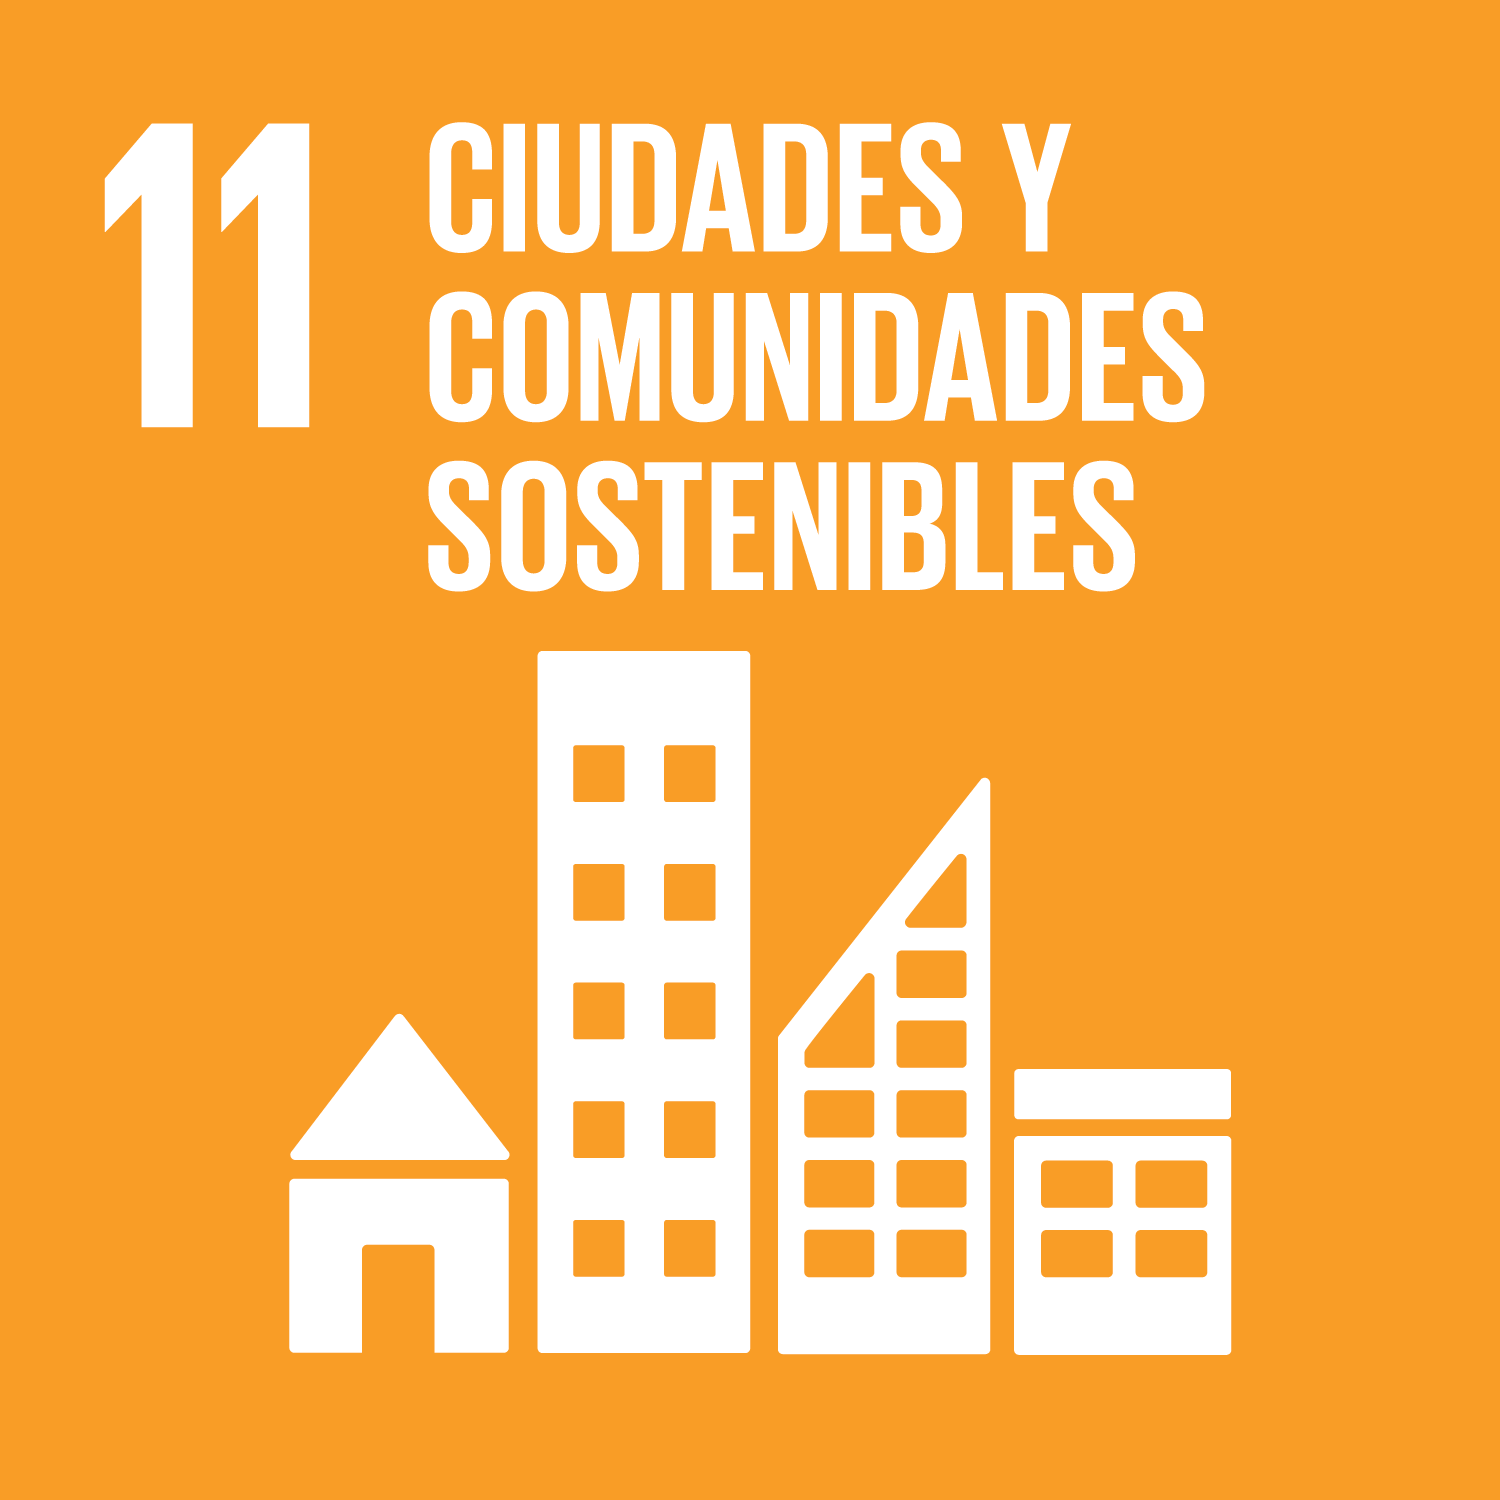 ODS Objetivo 11: Ciudades y communidades sostenibles